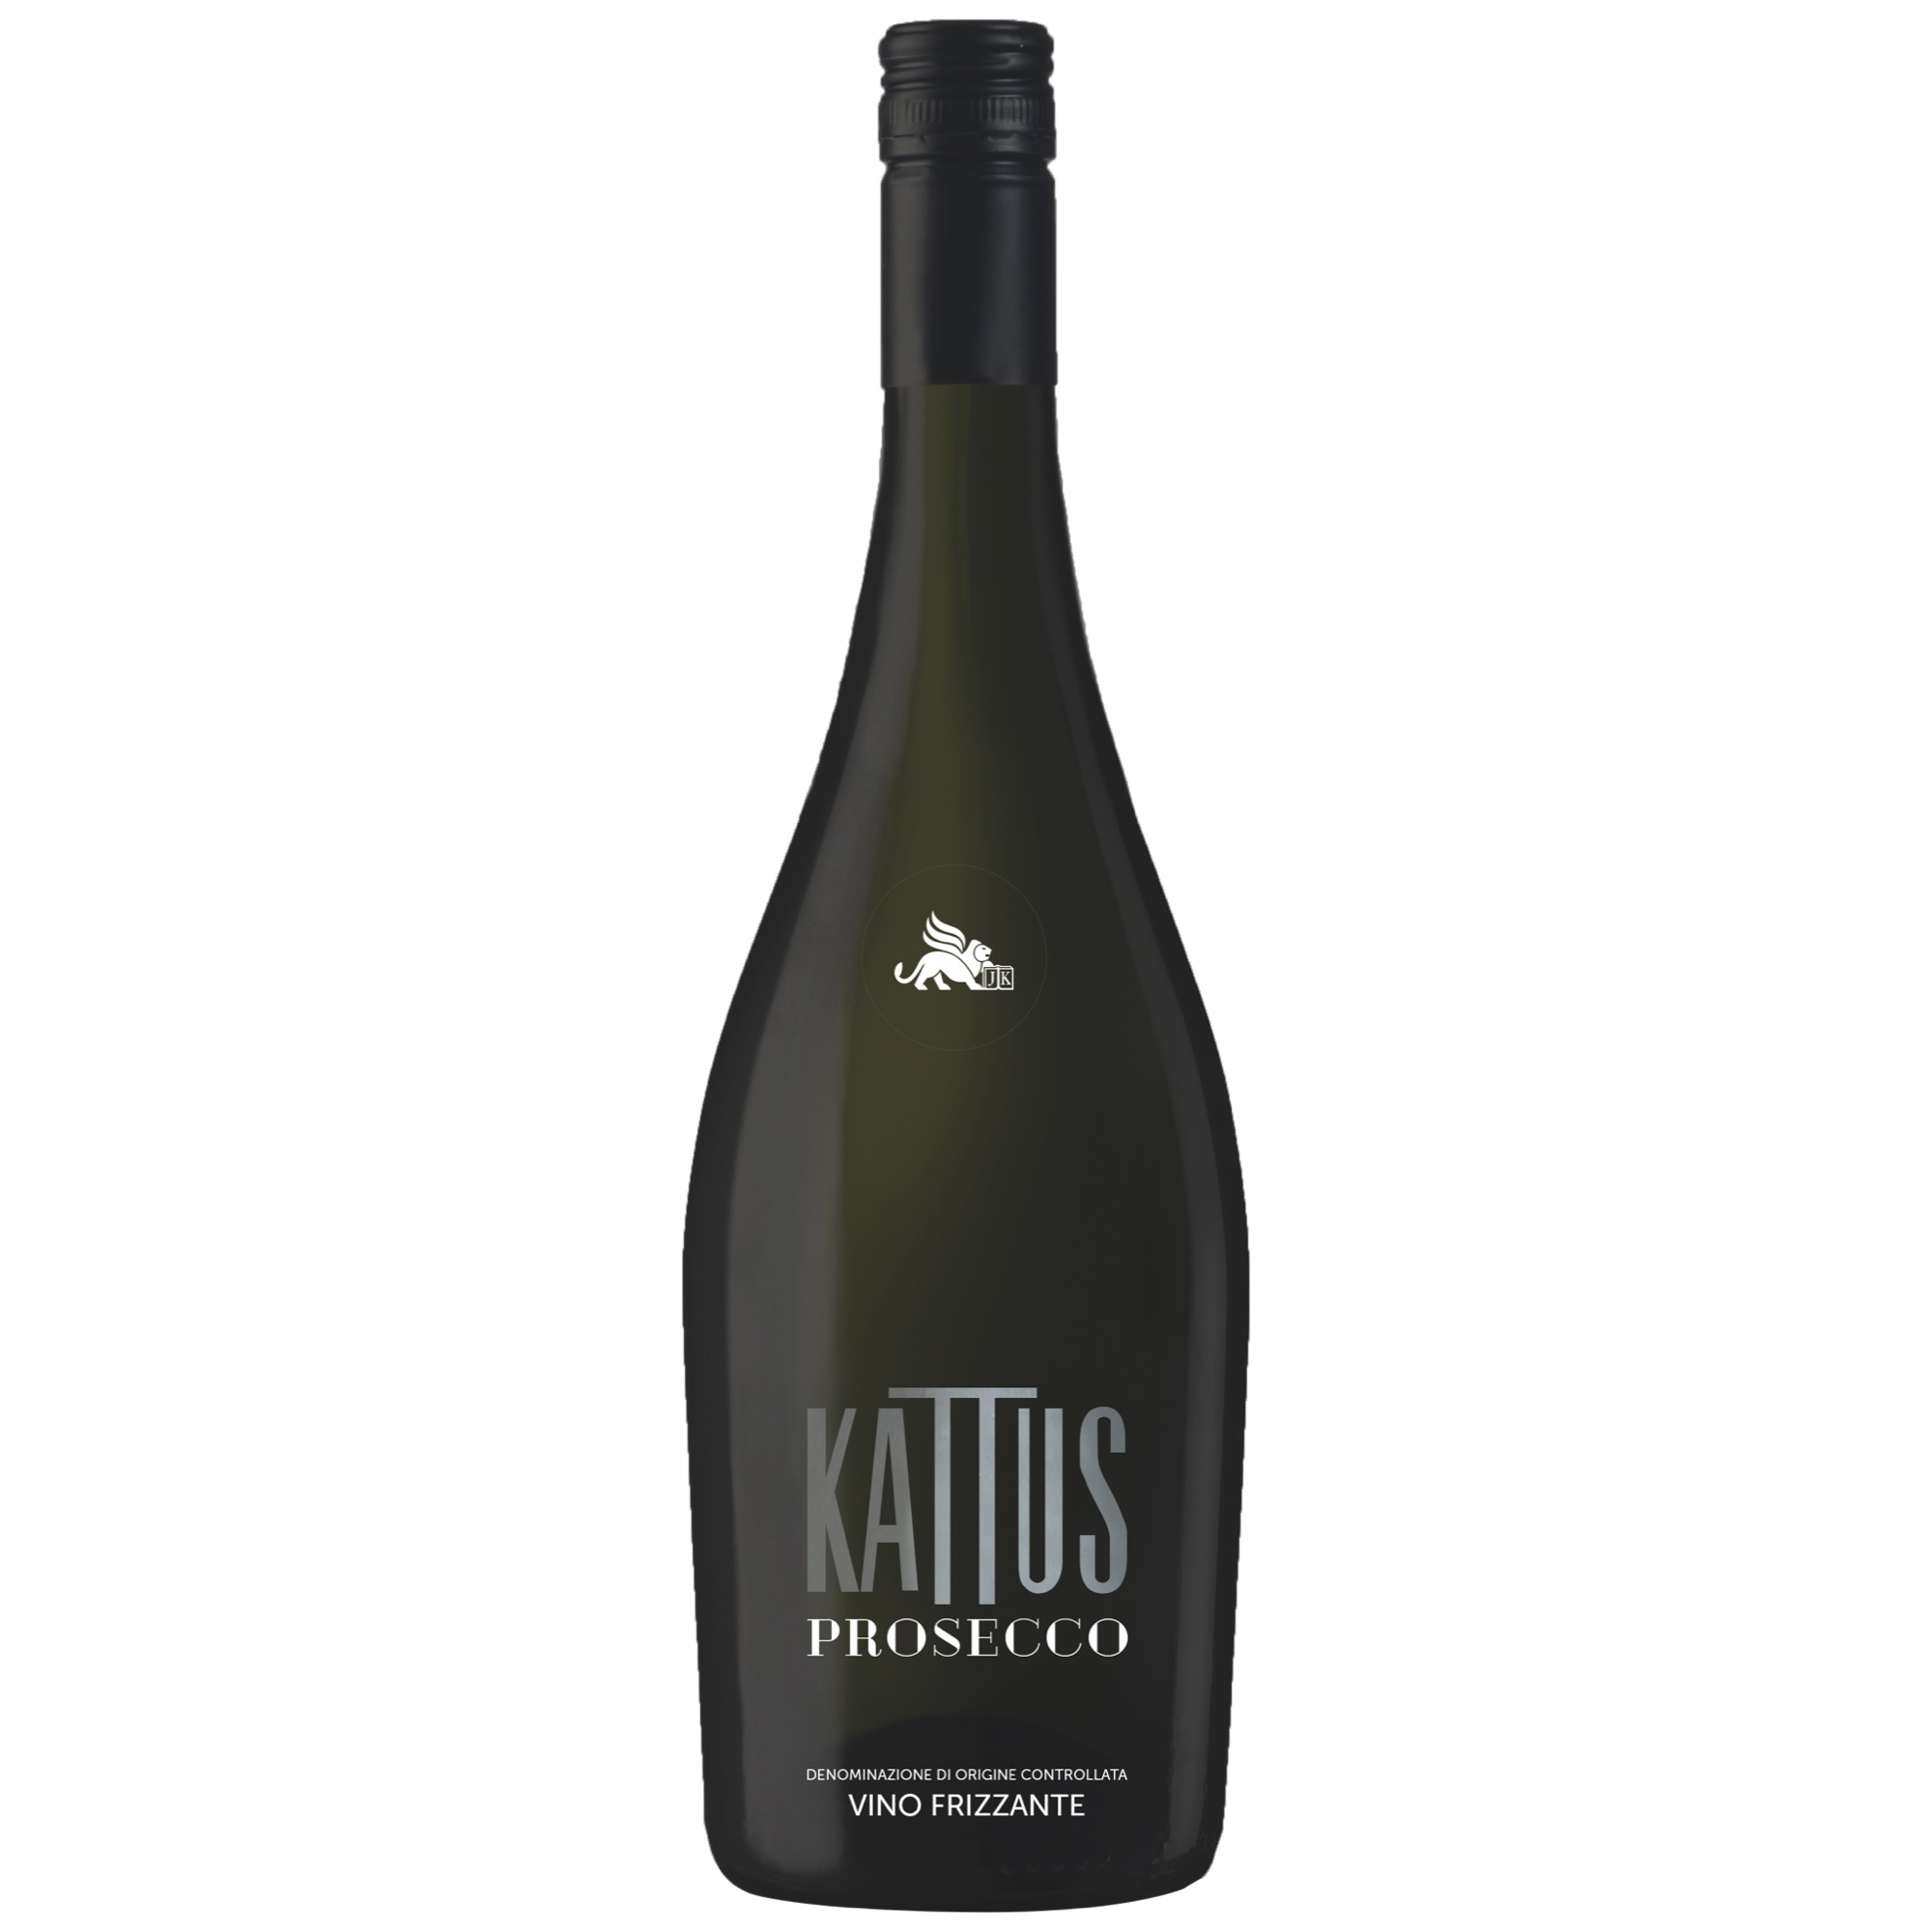 Kattus Prosecco Vino Frizzante 0,75l